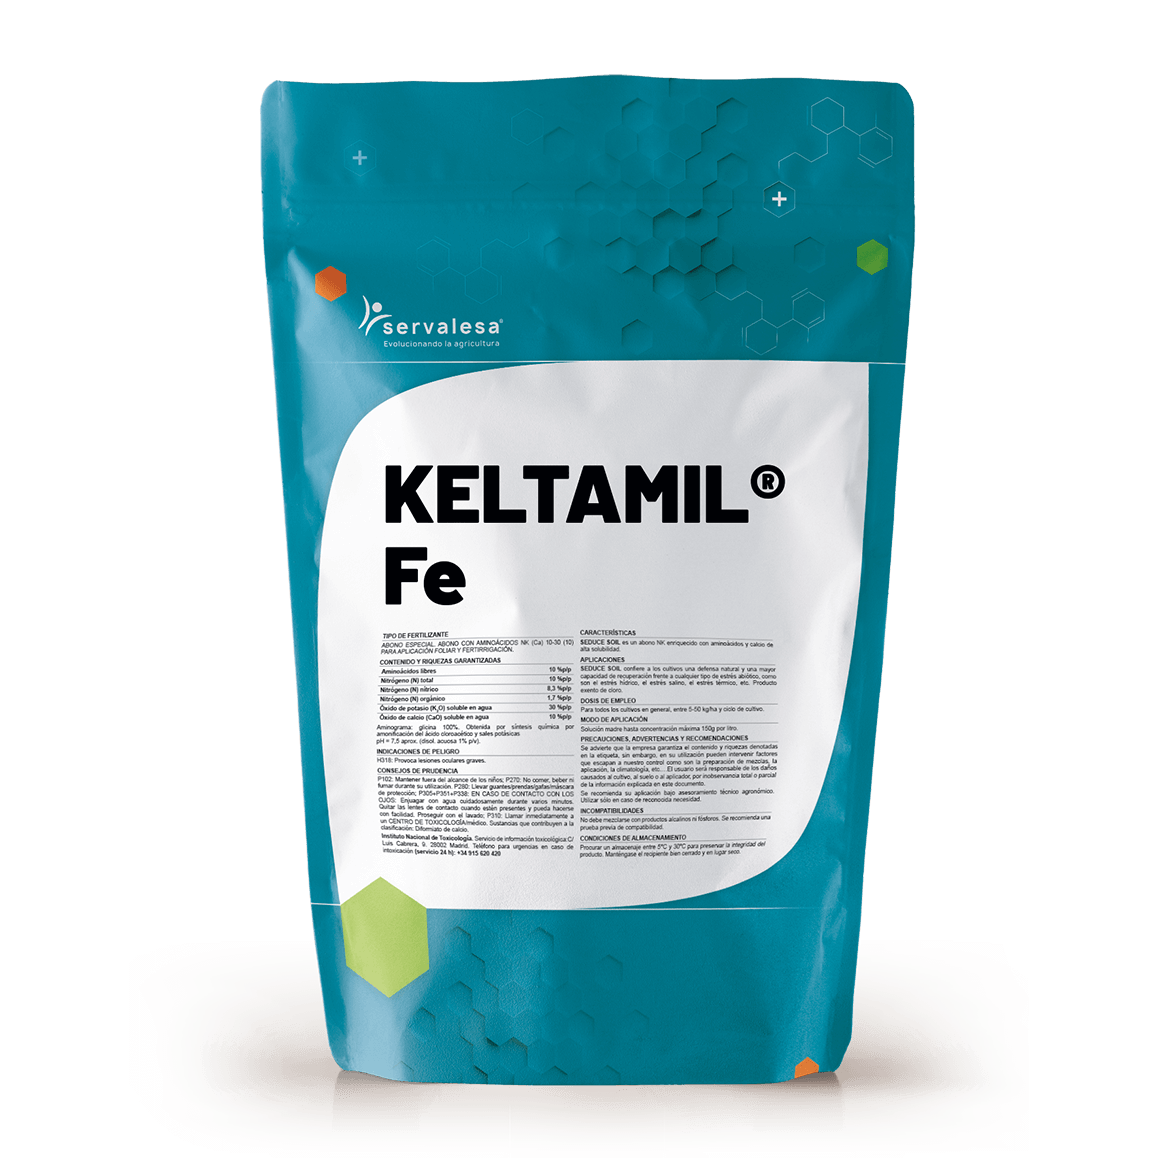 KELTAMIL-Fe-1kg